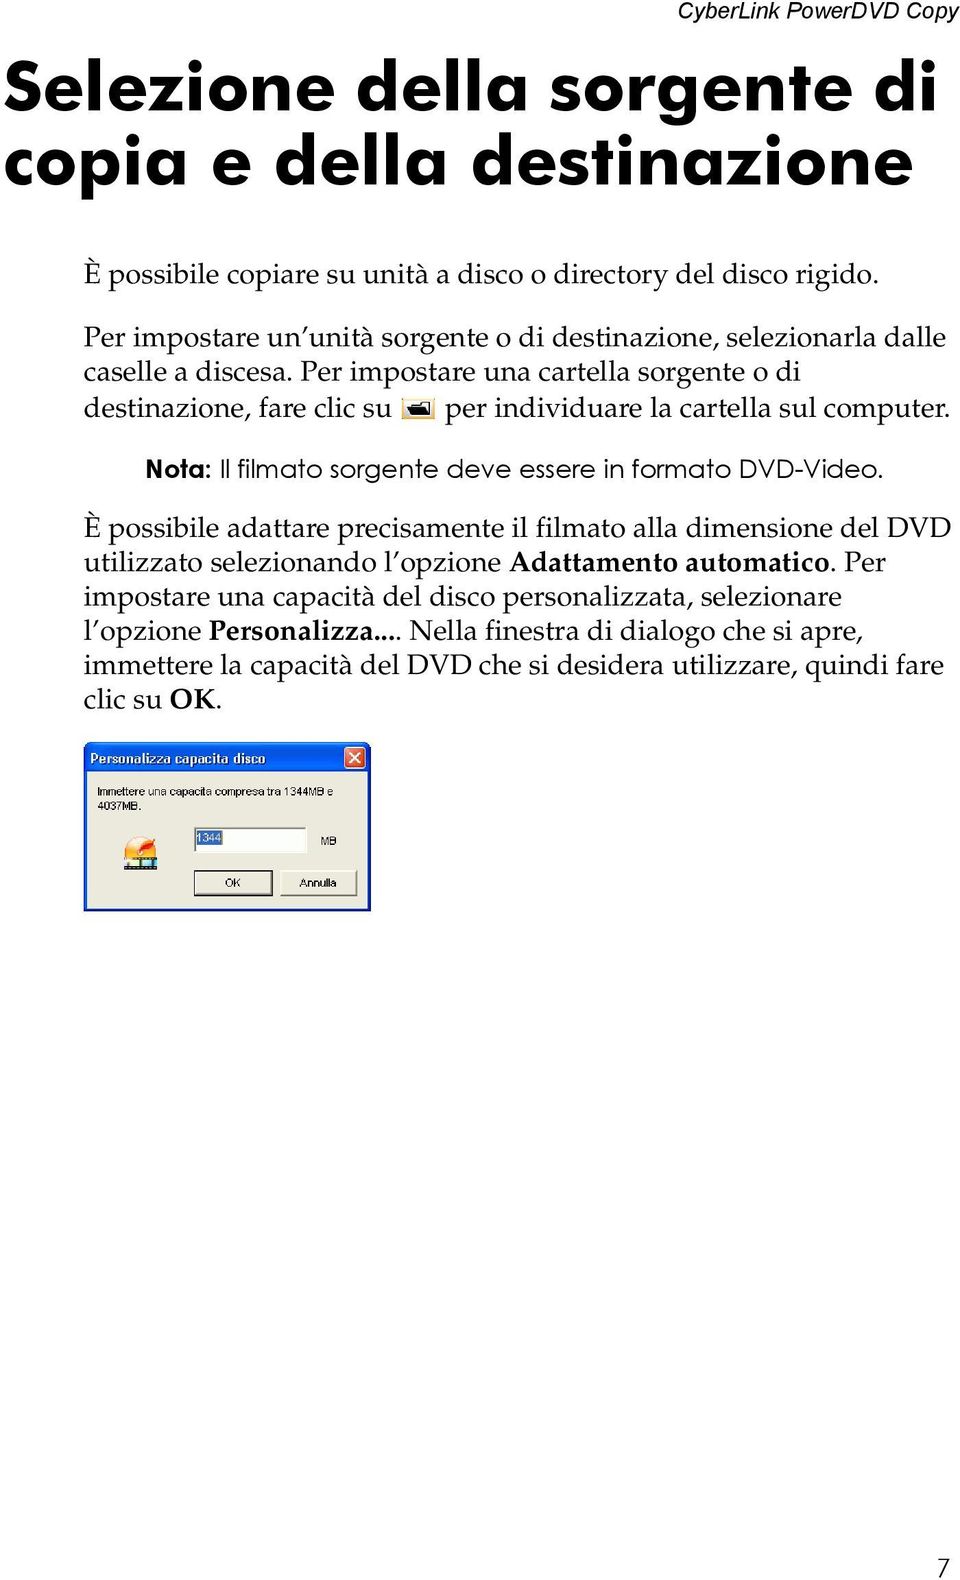 Per impostare una cartella sorgente o di destinazione, fare clic su per individuare la cartella sul computer. Nota: Il filmato sorgente deve essere in formato DVD-Video.